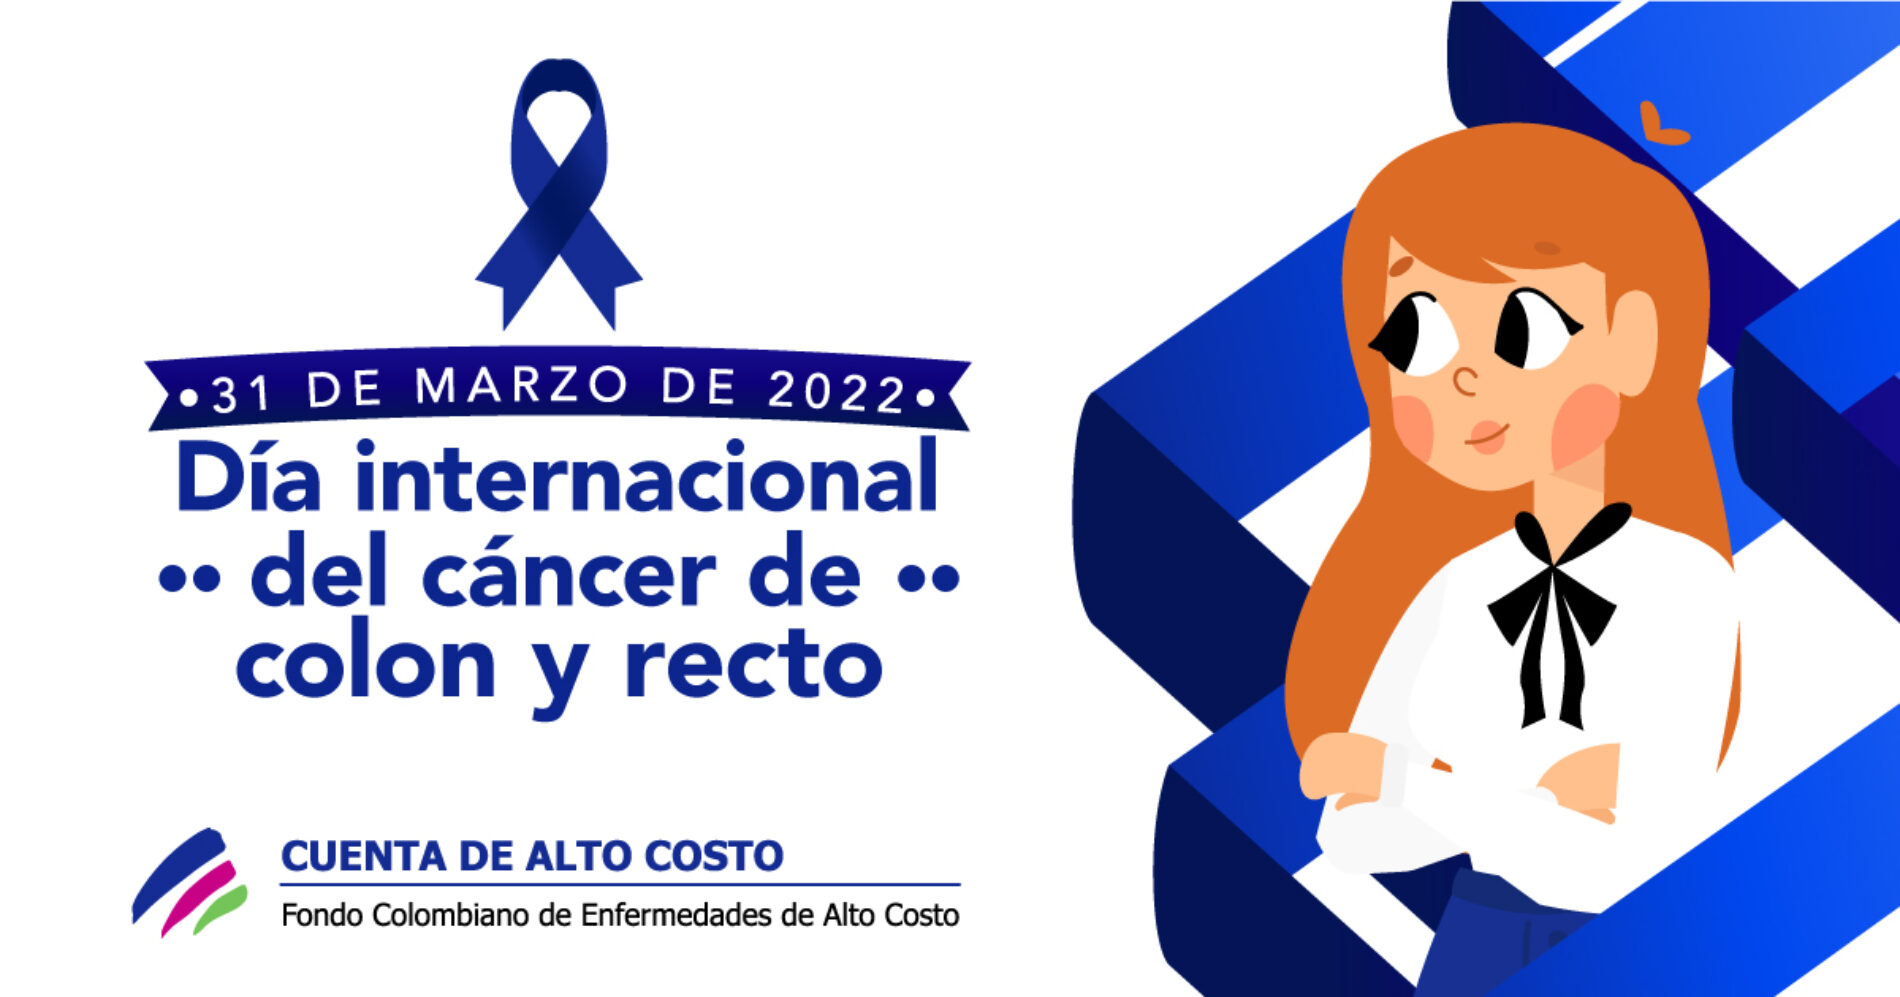 Avances y retos en la atención del cáncer de cólon y recto en Colombia